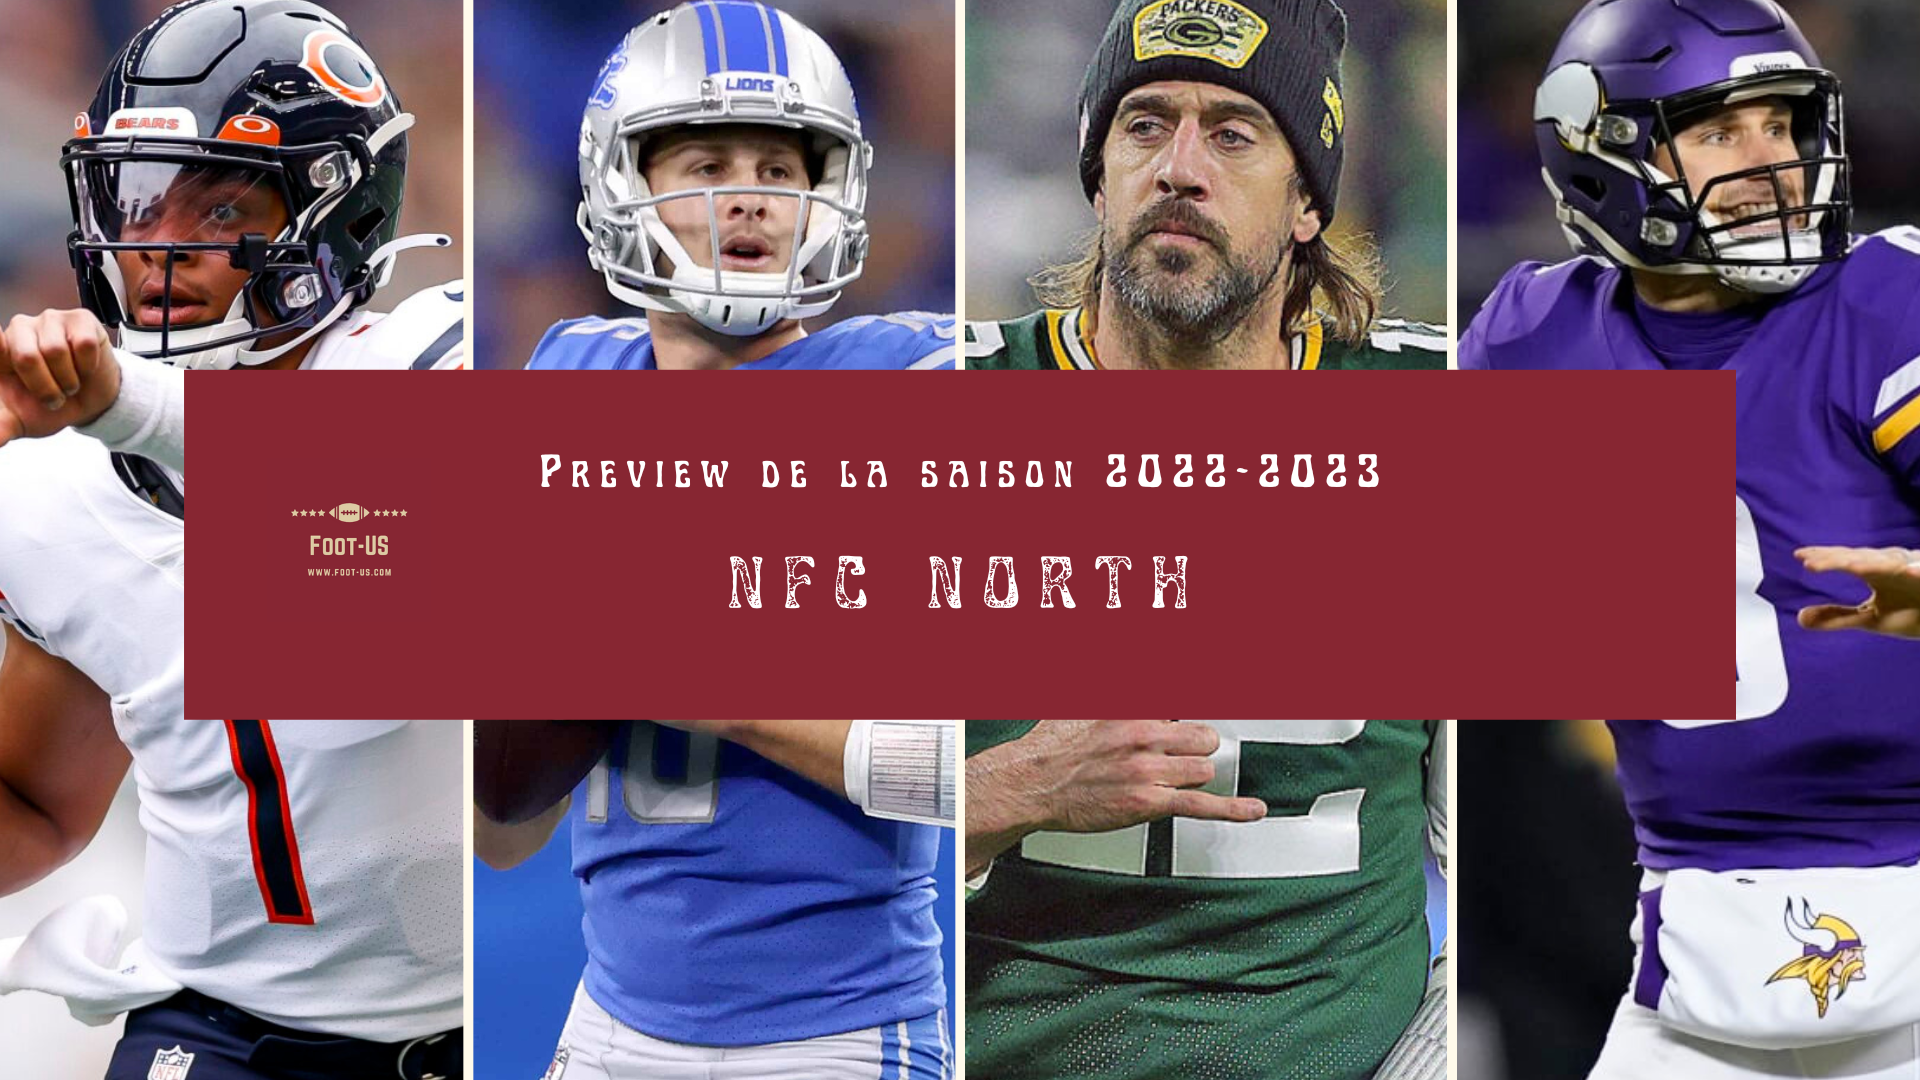 Preview de la saison 2022-2023 de NFL – NFC North